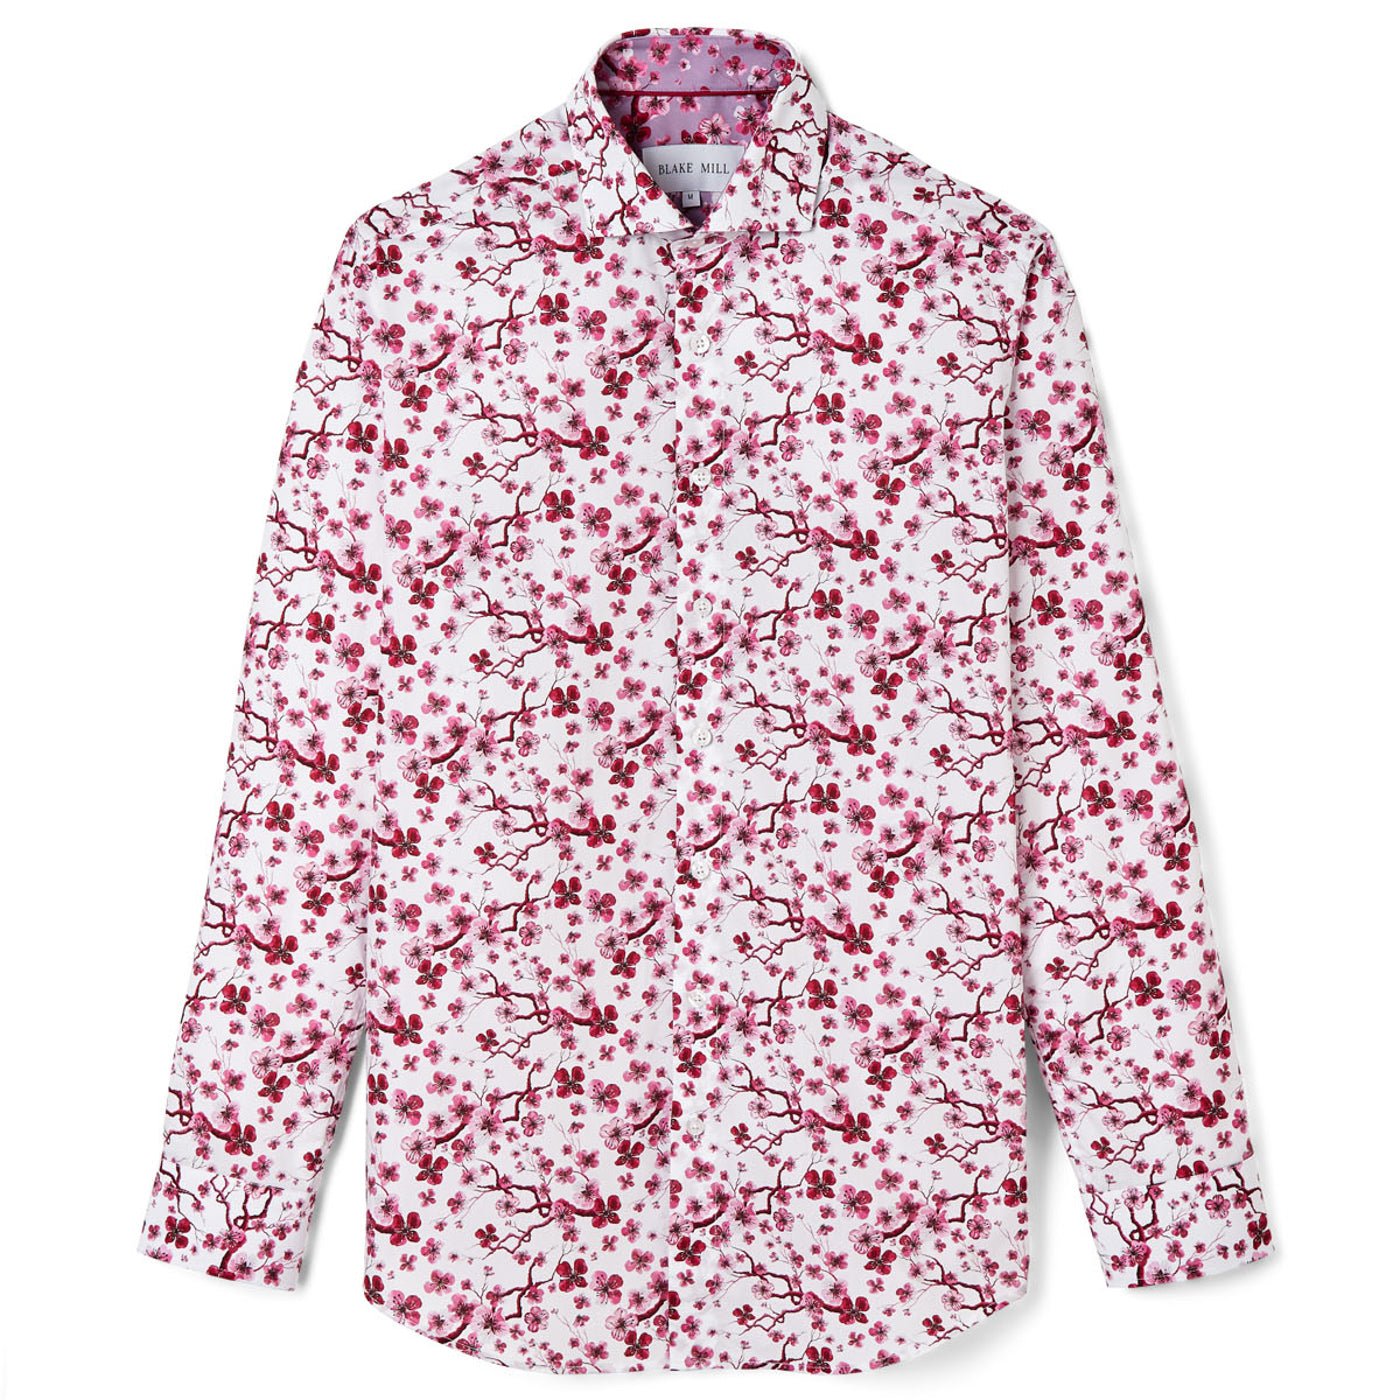 Marianna Knit-Woven Long Sleeve Layering Shirt